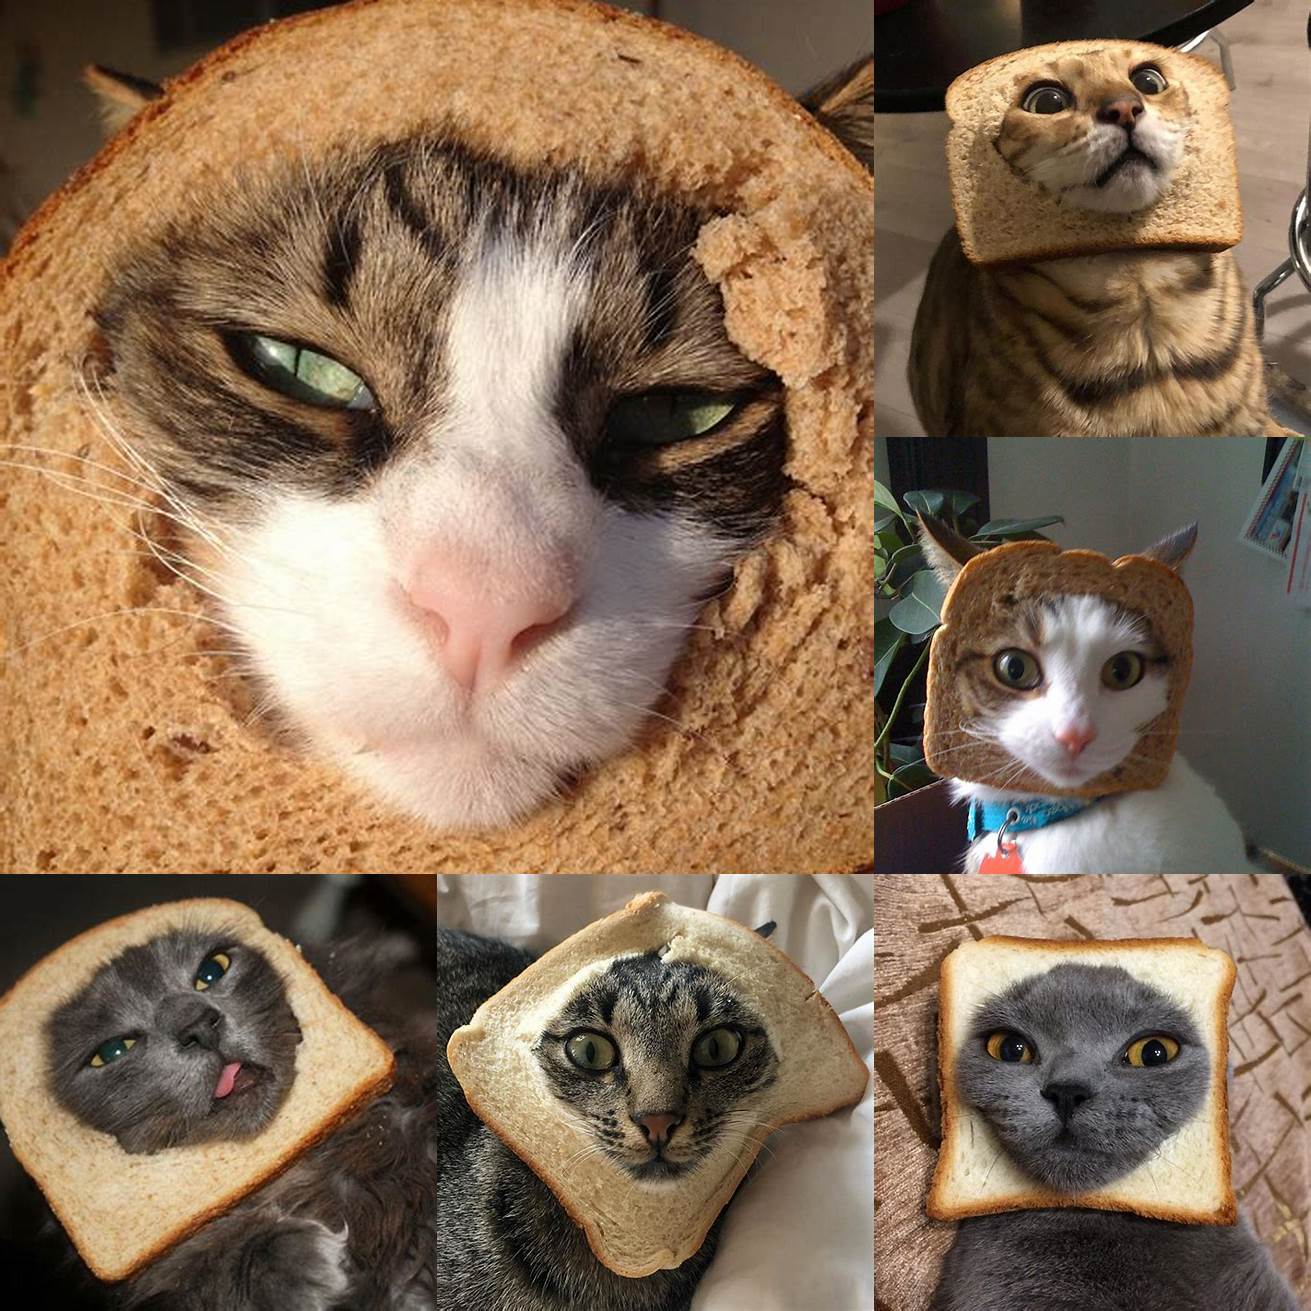 Cat in Bread as a work of art